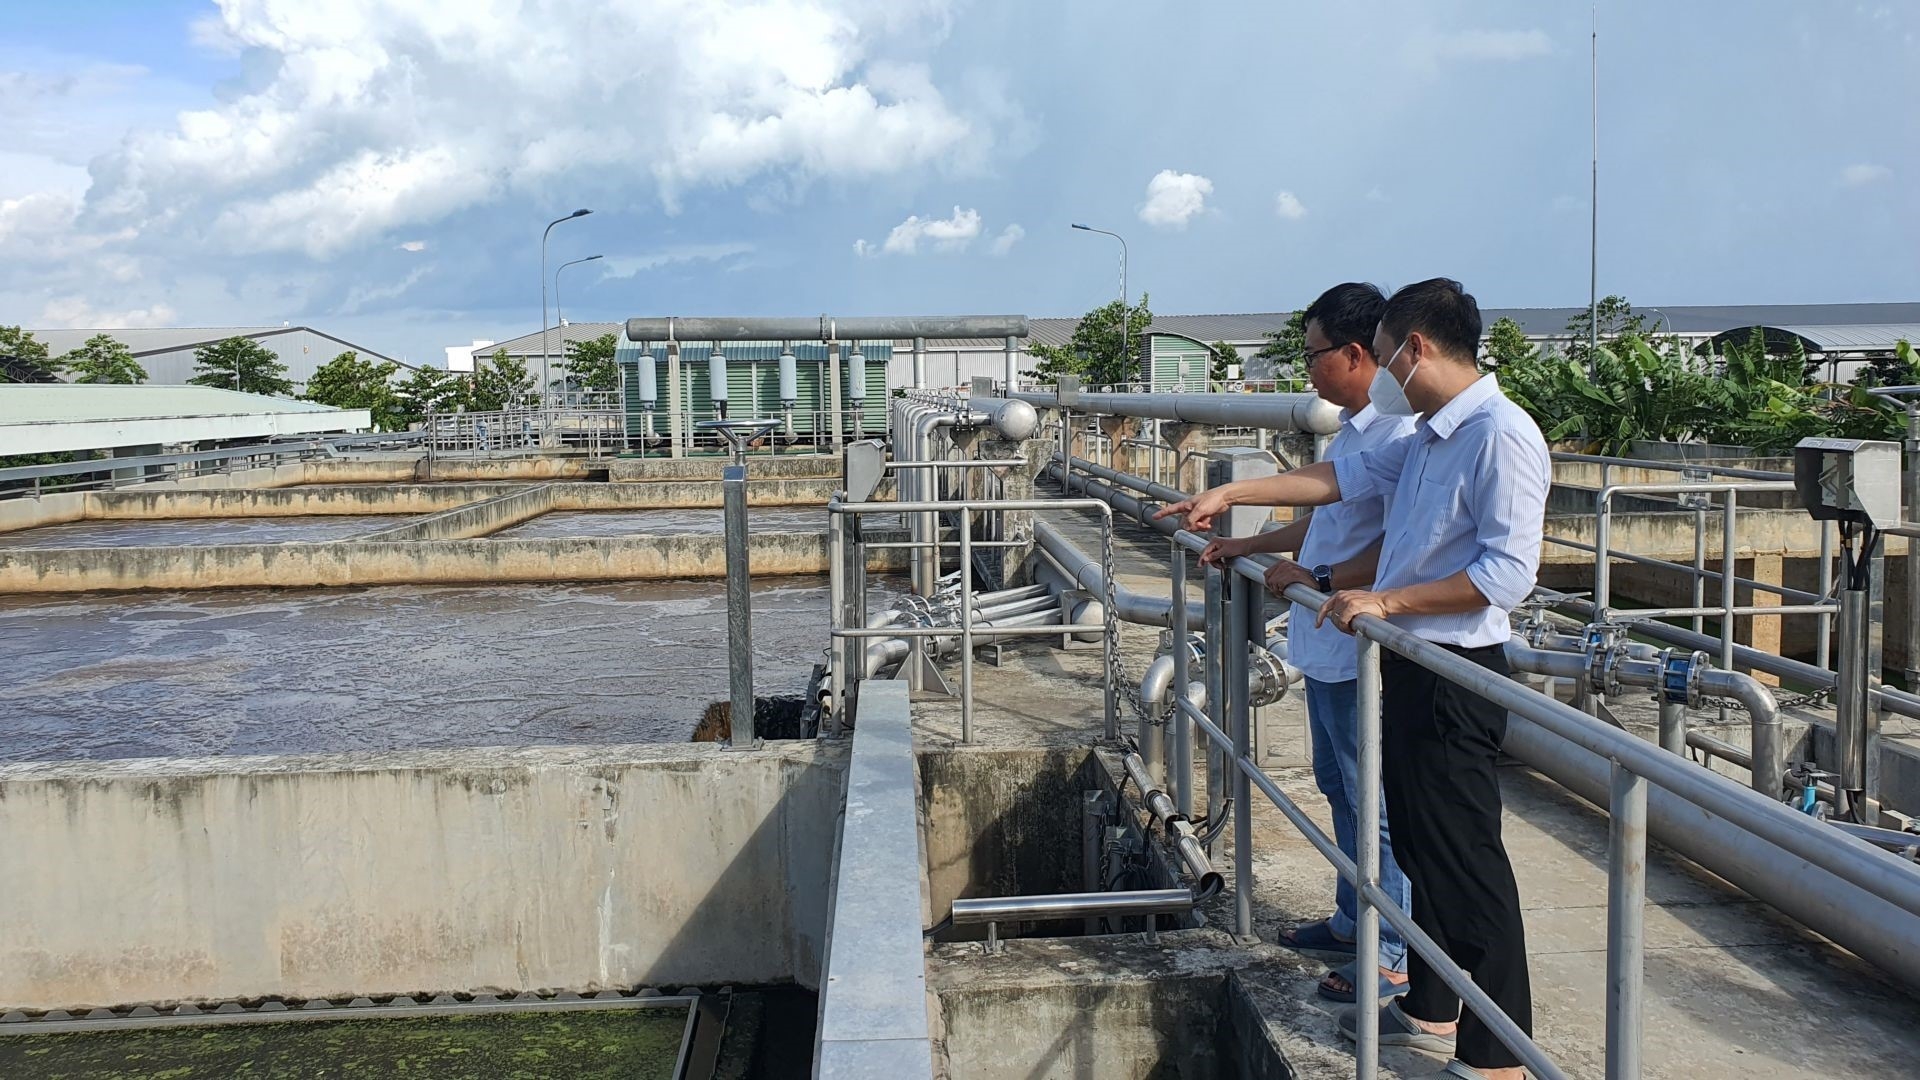 Tây Ninh: Hoàn thiện hạ tầng các hệ thống quan trắc môi trường tự động phục vụ chuyển đổi số và làm tốt công tác bảo vệ môi trường